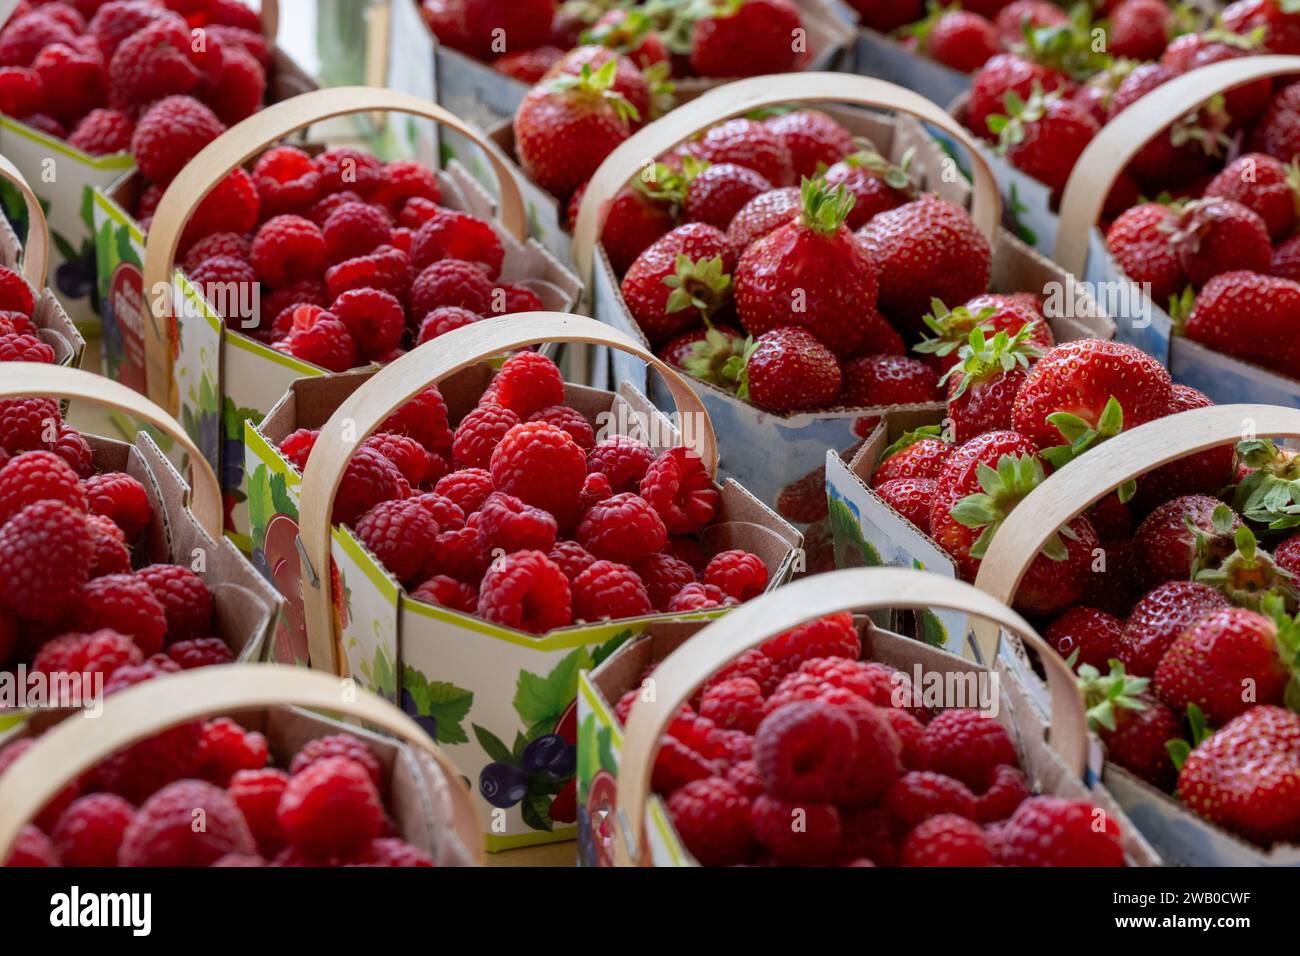 Körbe mit frischen süßen roten Erdbeeren und Himbeeren aus biologischem Anbau zum Verkauf in einem Supermarkt. Die Reifen Beeren werden in Kartonkörben gelagert. Stockfoto